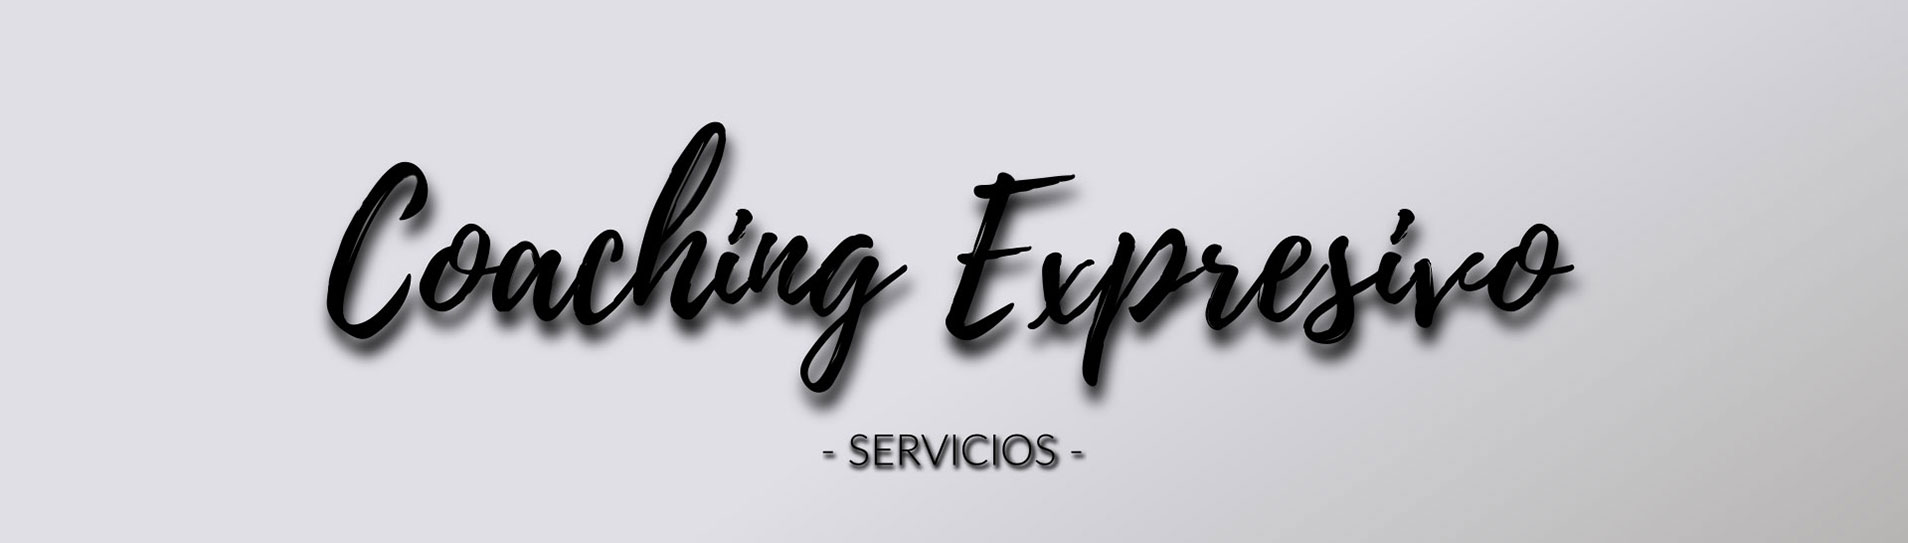 Coaching Expresivo, Servicios